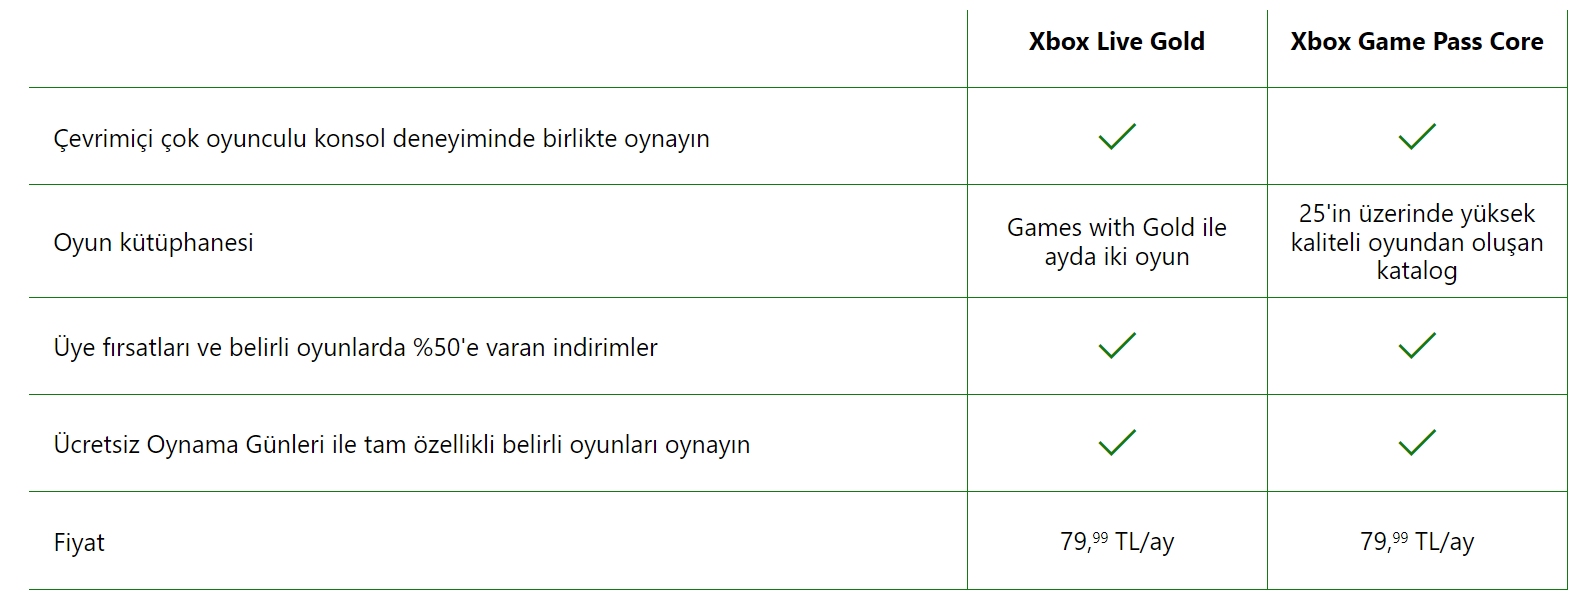 Ulaş Utku Bozdoğan: Xbox Live Gold'un Yerine Geçecek Game Pass Core'un Çıkış Tarihi Açıklandı: İşte Yeni Abonelikte Yer Alacak İlk Oyunlar! 5